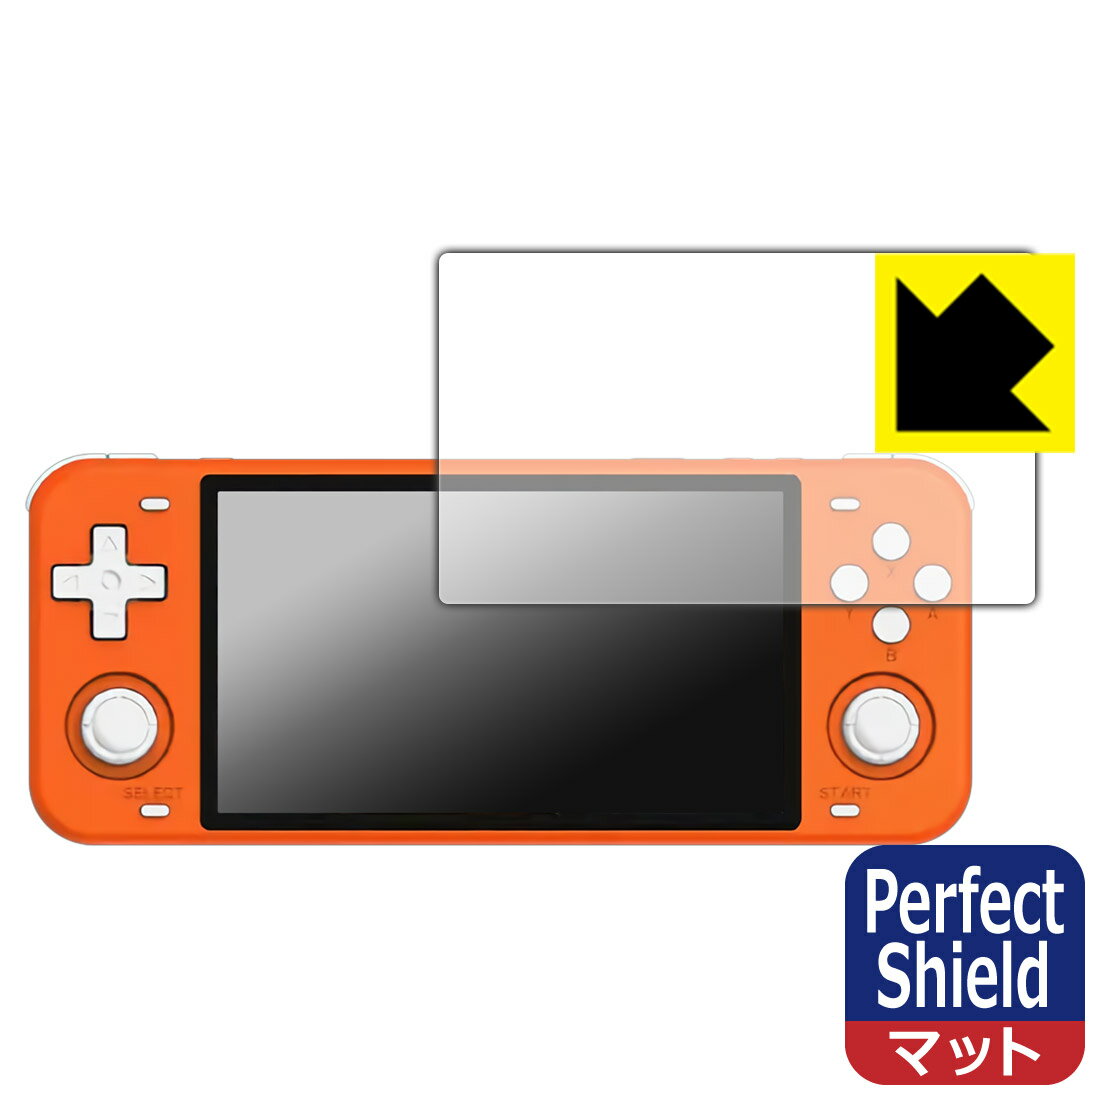 Perfect Shield Powkiddy RGB10 MAX  ¤ľ